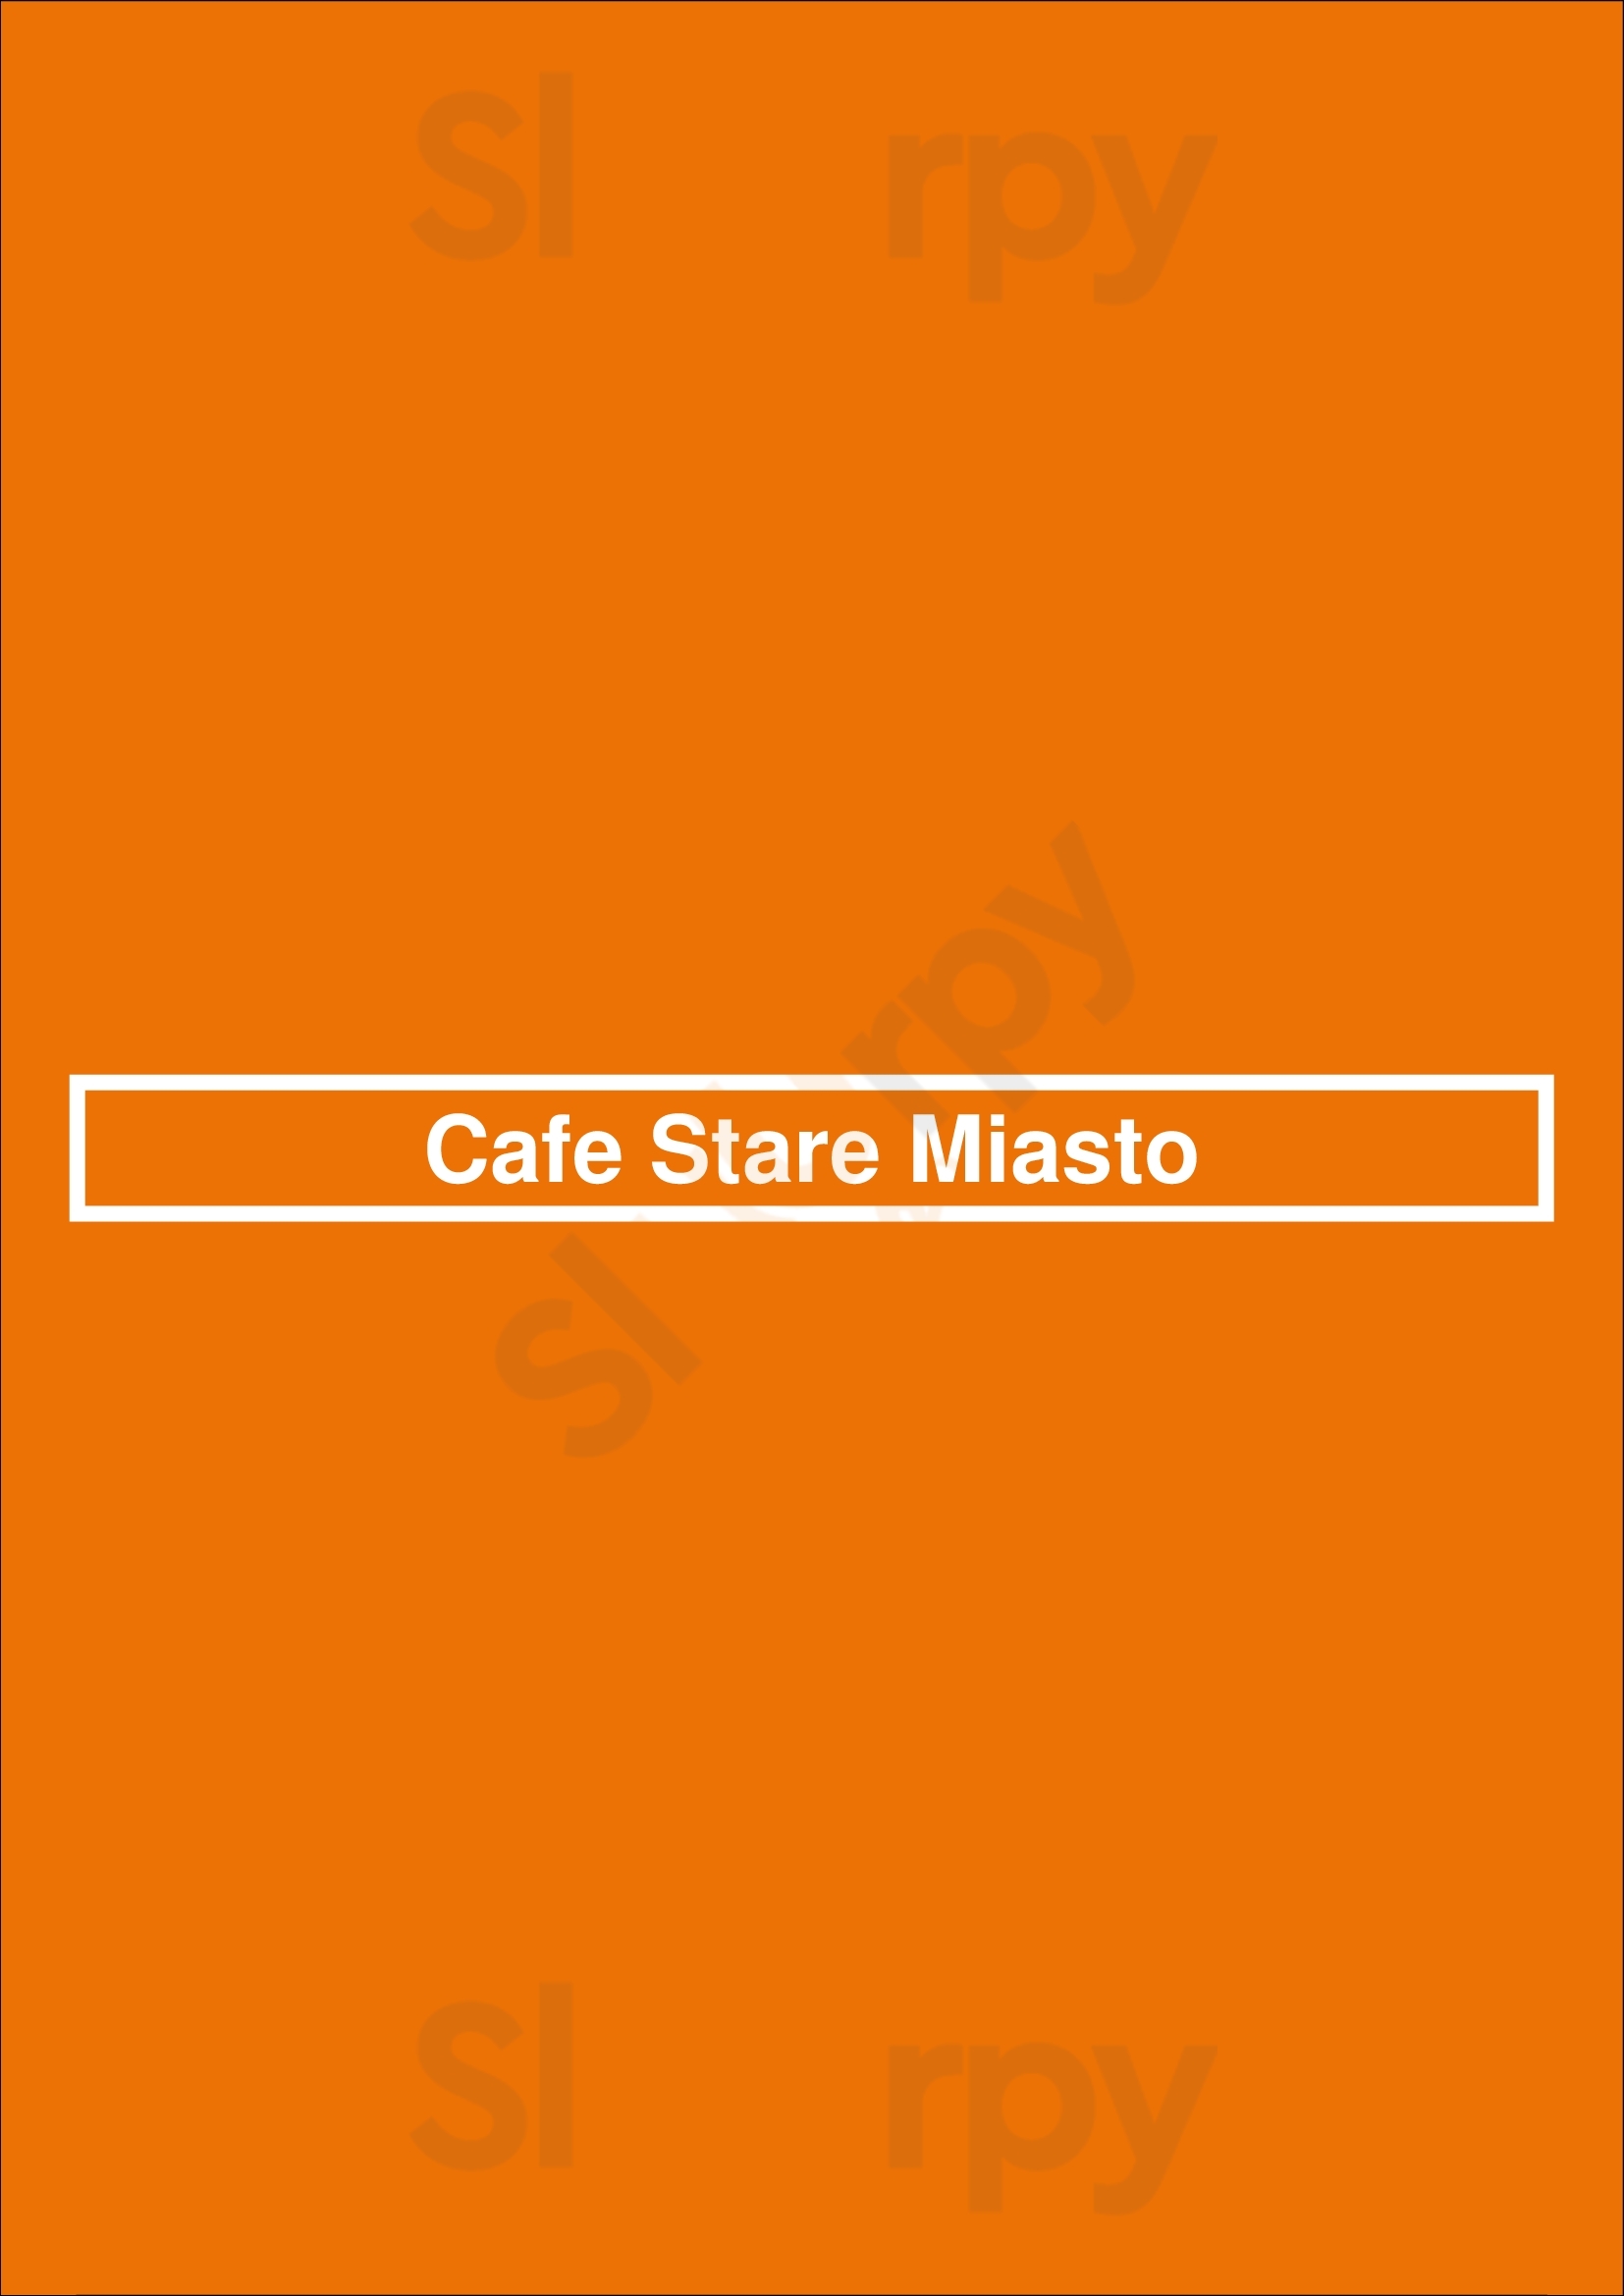 Cafe Stare Miasto Kraków Menu - 1